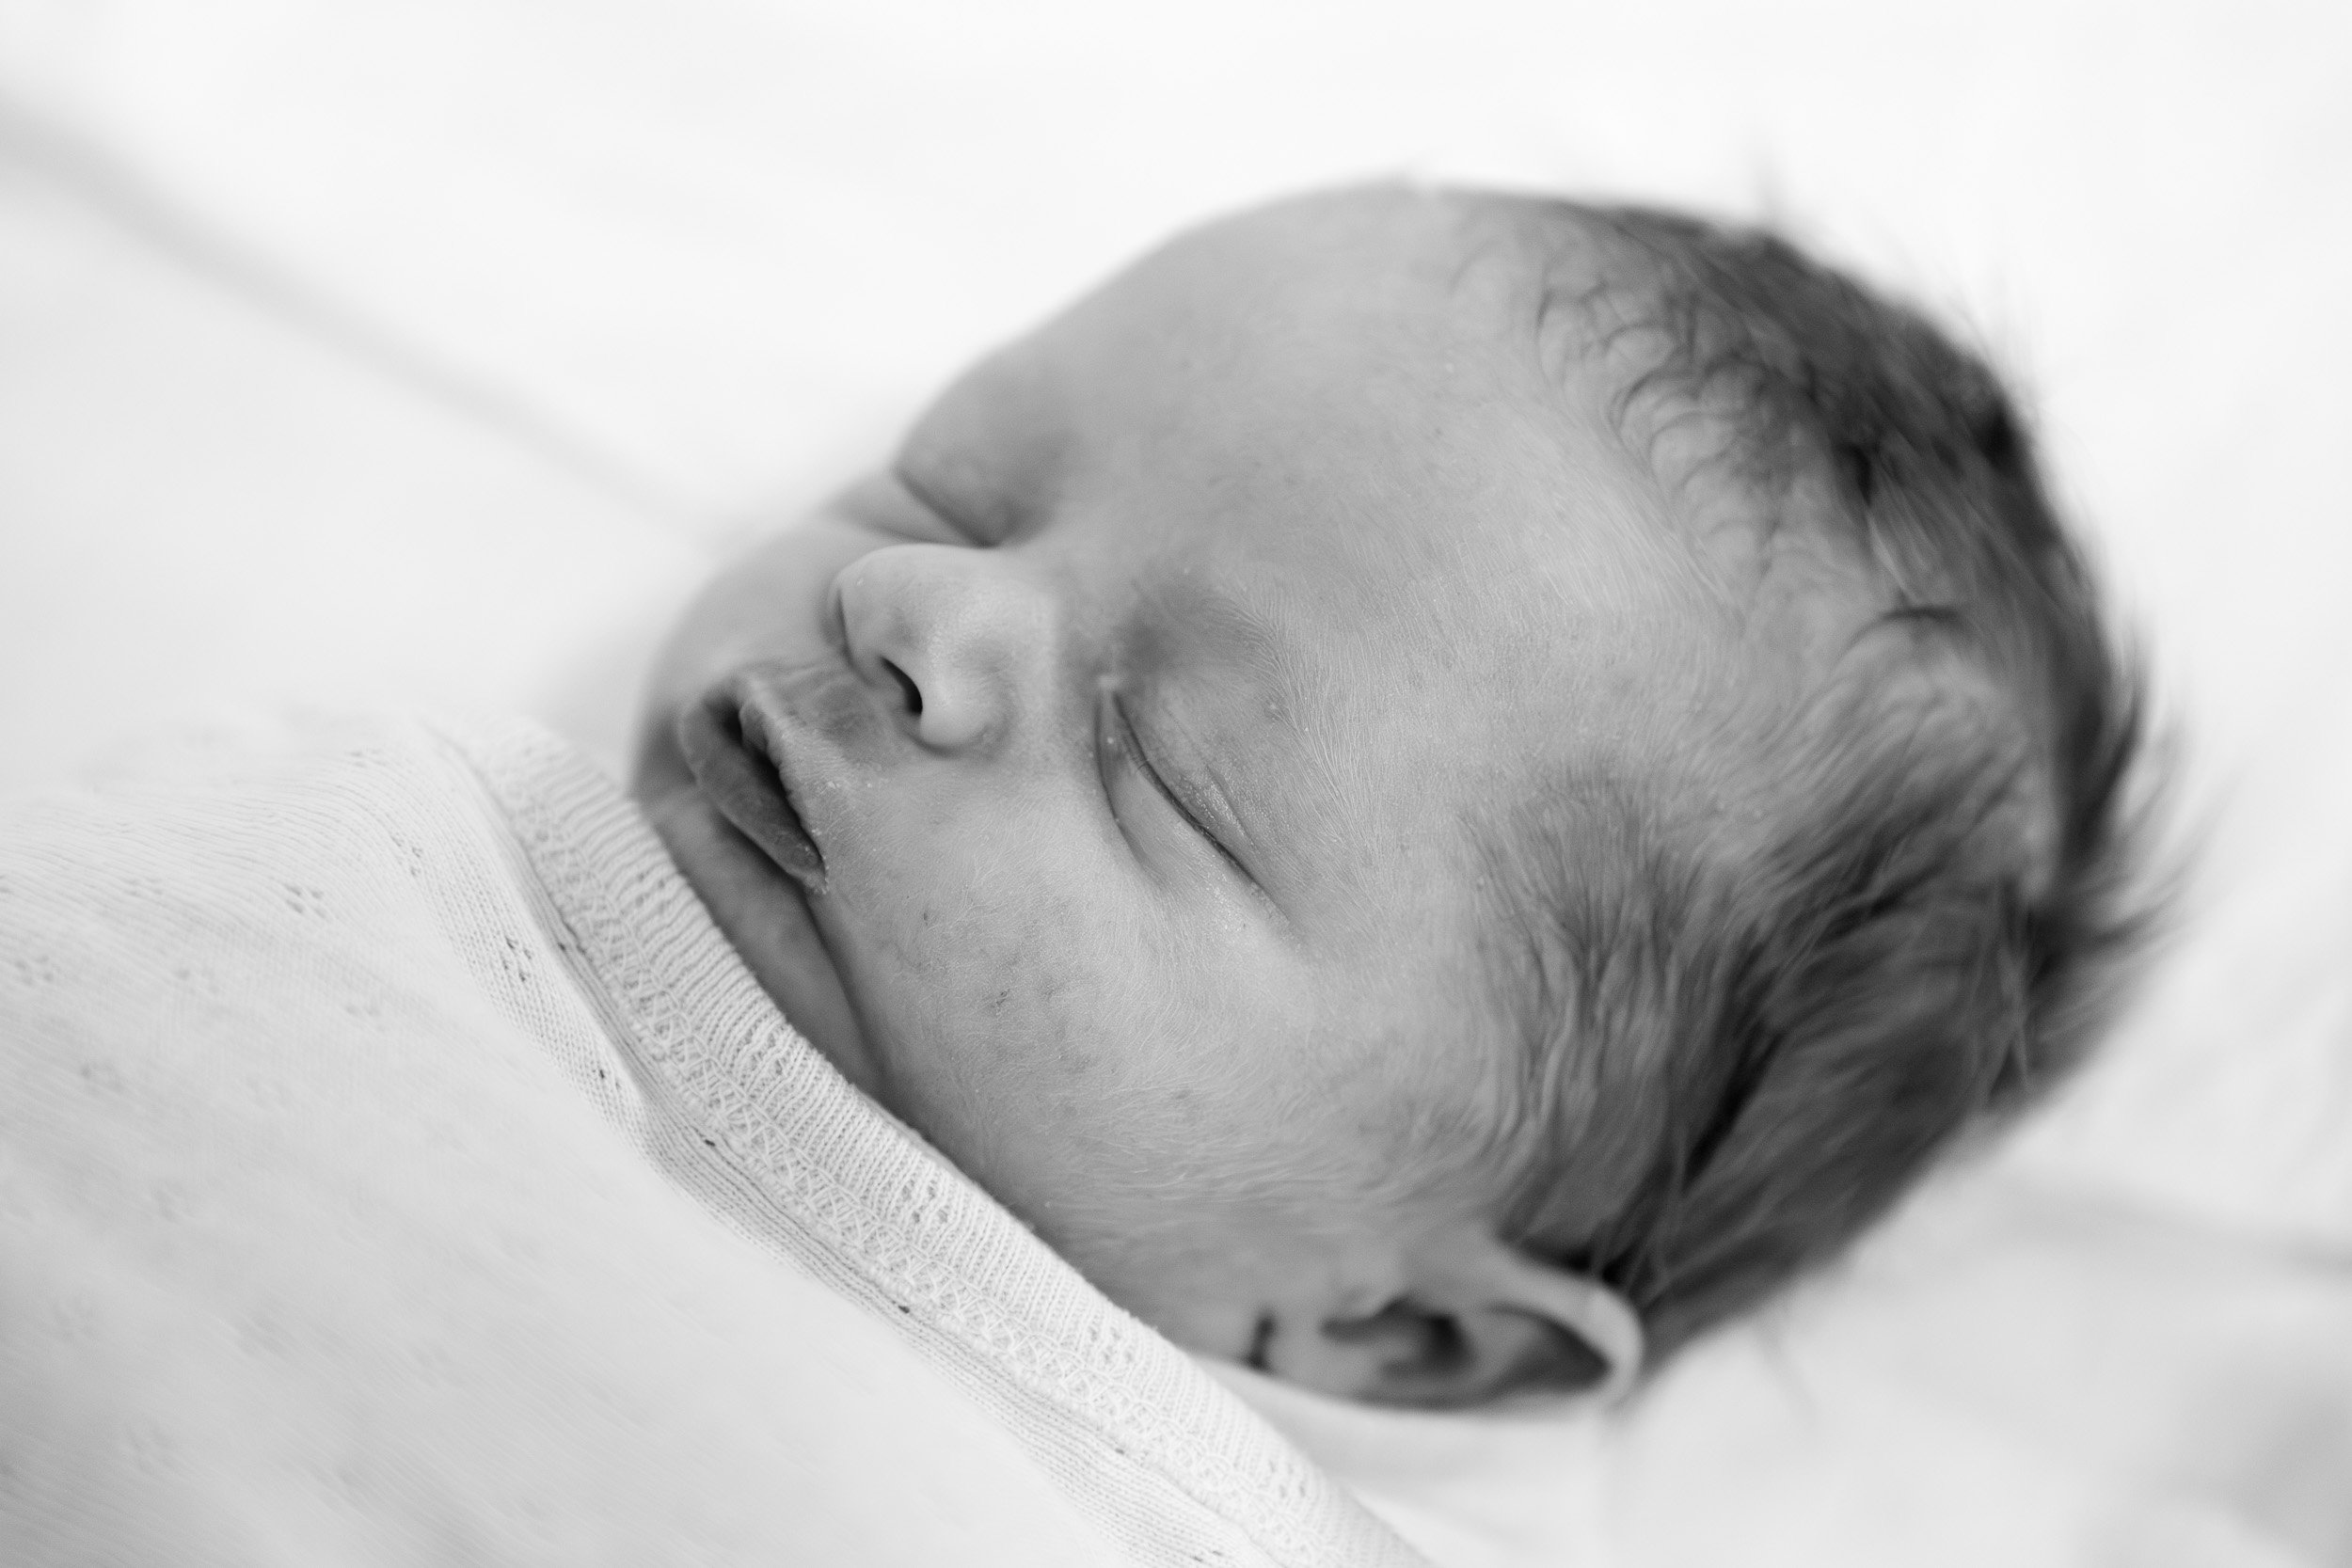  newborn photograph black and white 